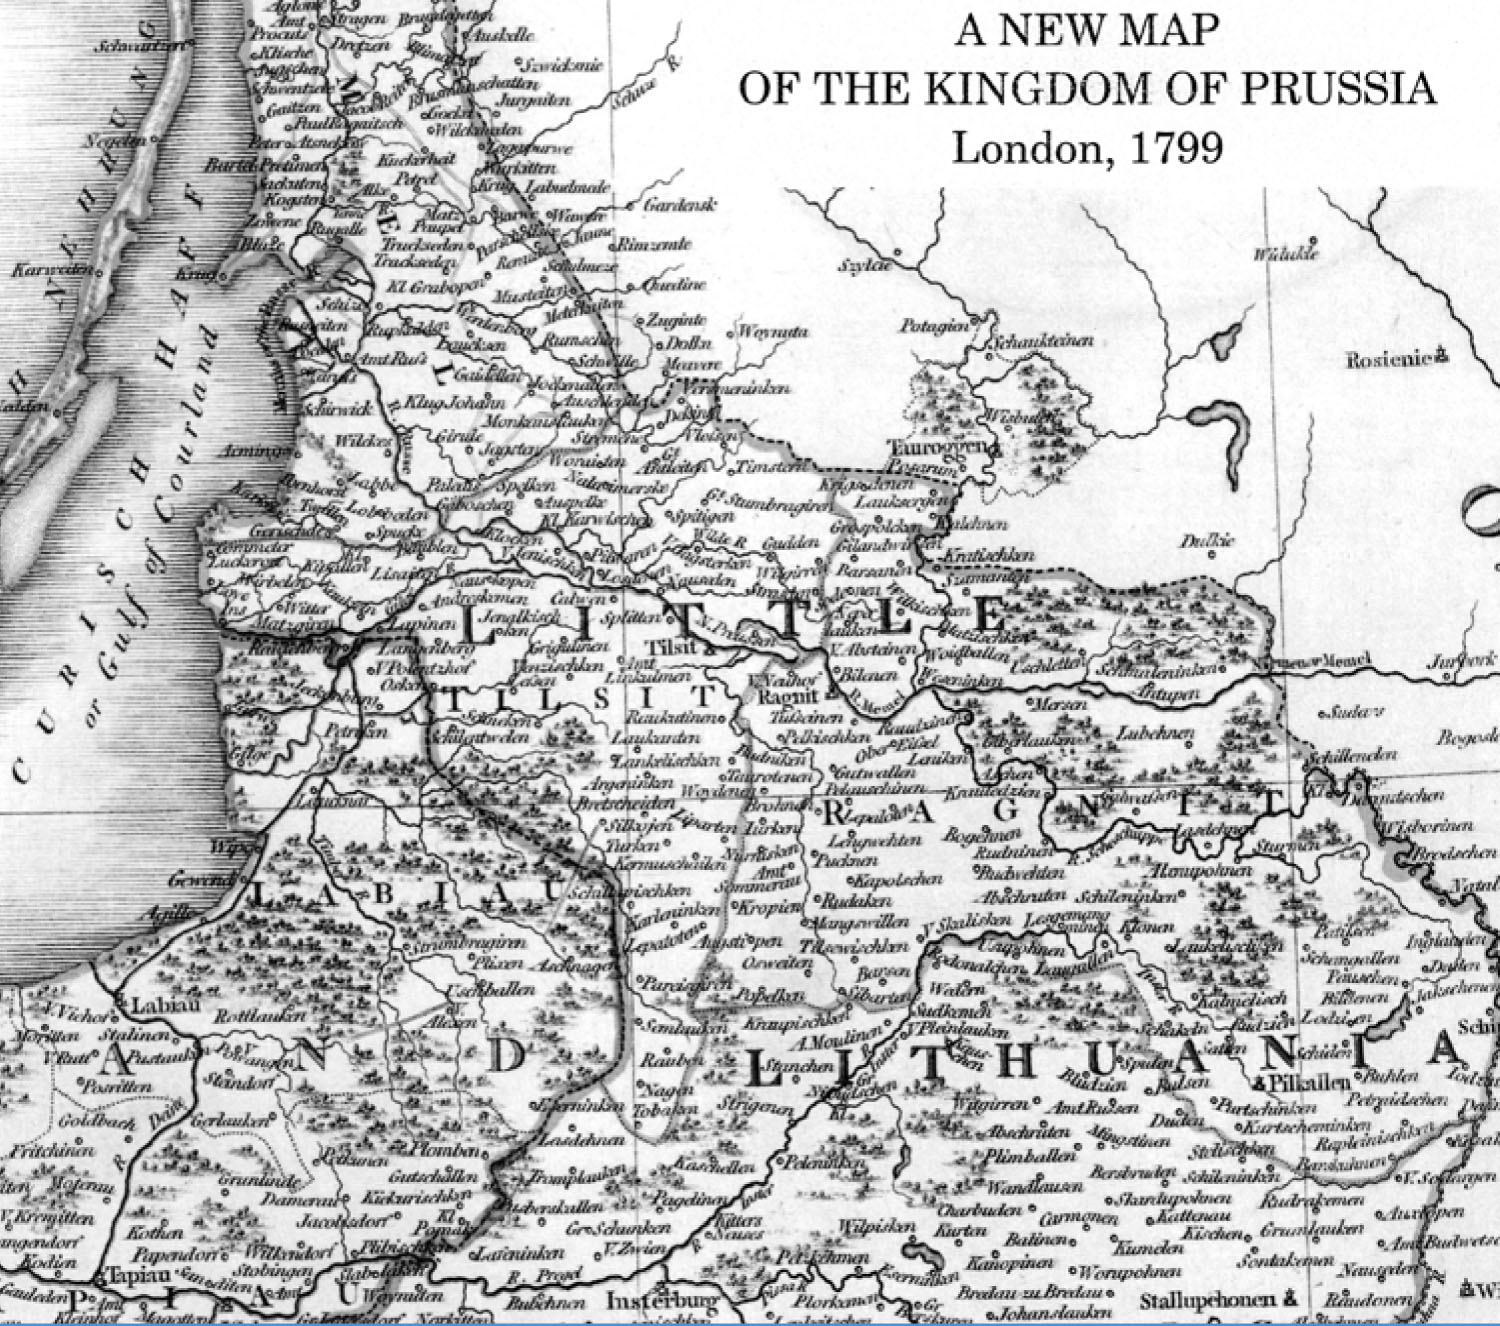 Londone išleisto Prūsijos karalystės 1799 m. žemėlapio iškarpa su užrašu „LITTLE LITHUANIA“ – Mažoji Lietuva